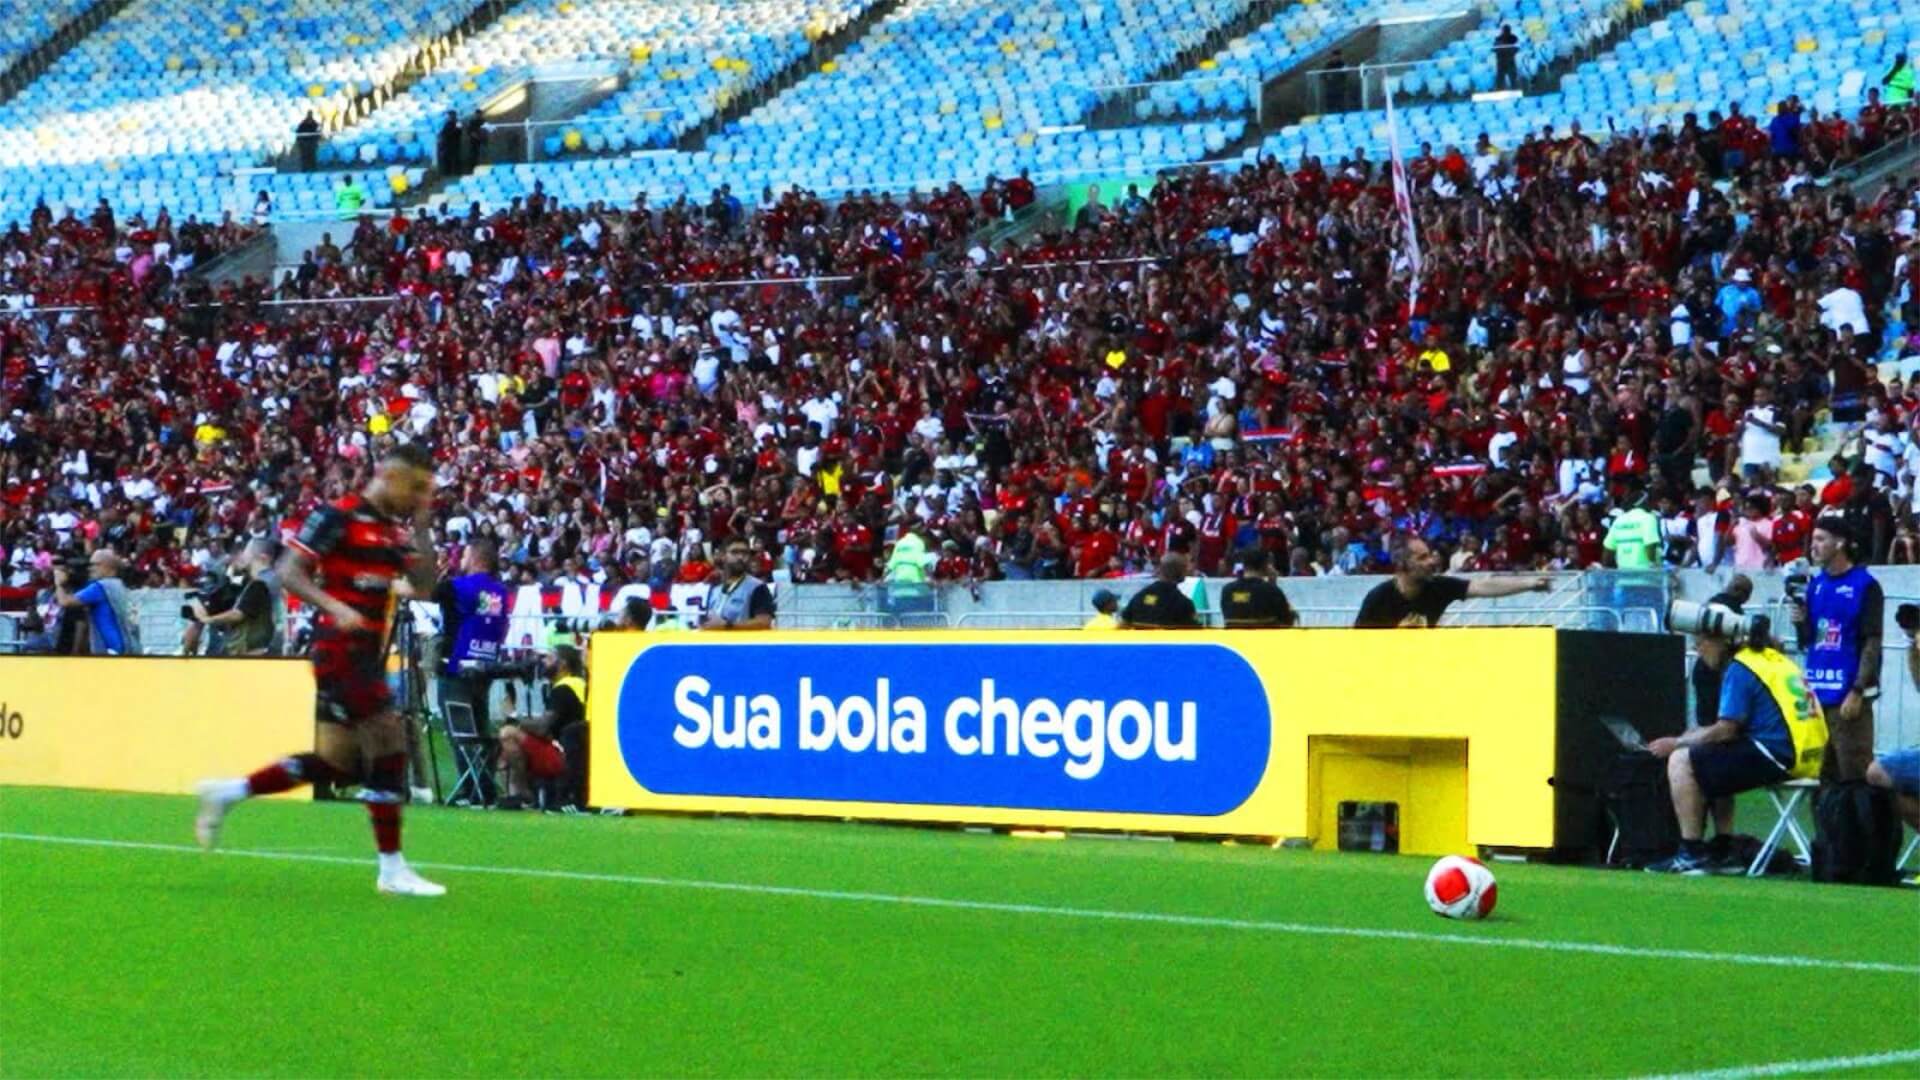 Patrocinador do Flamengo, Mercado Livre apresenta “Placa-Gandula” na Final do Campeonato Carioca